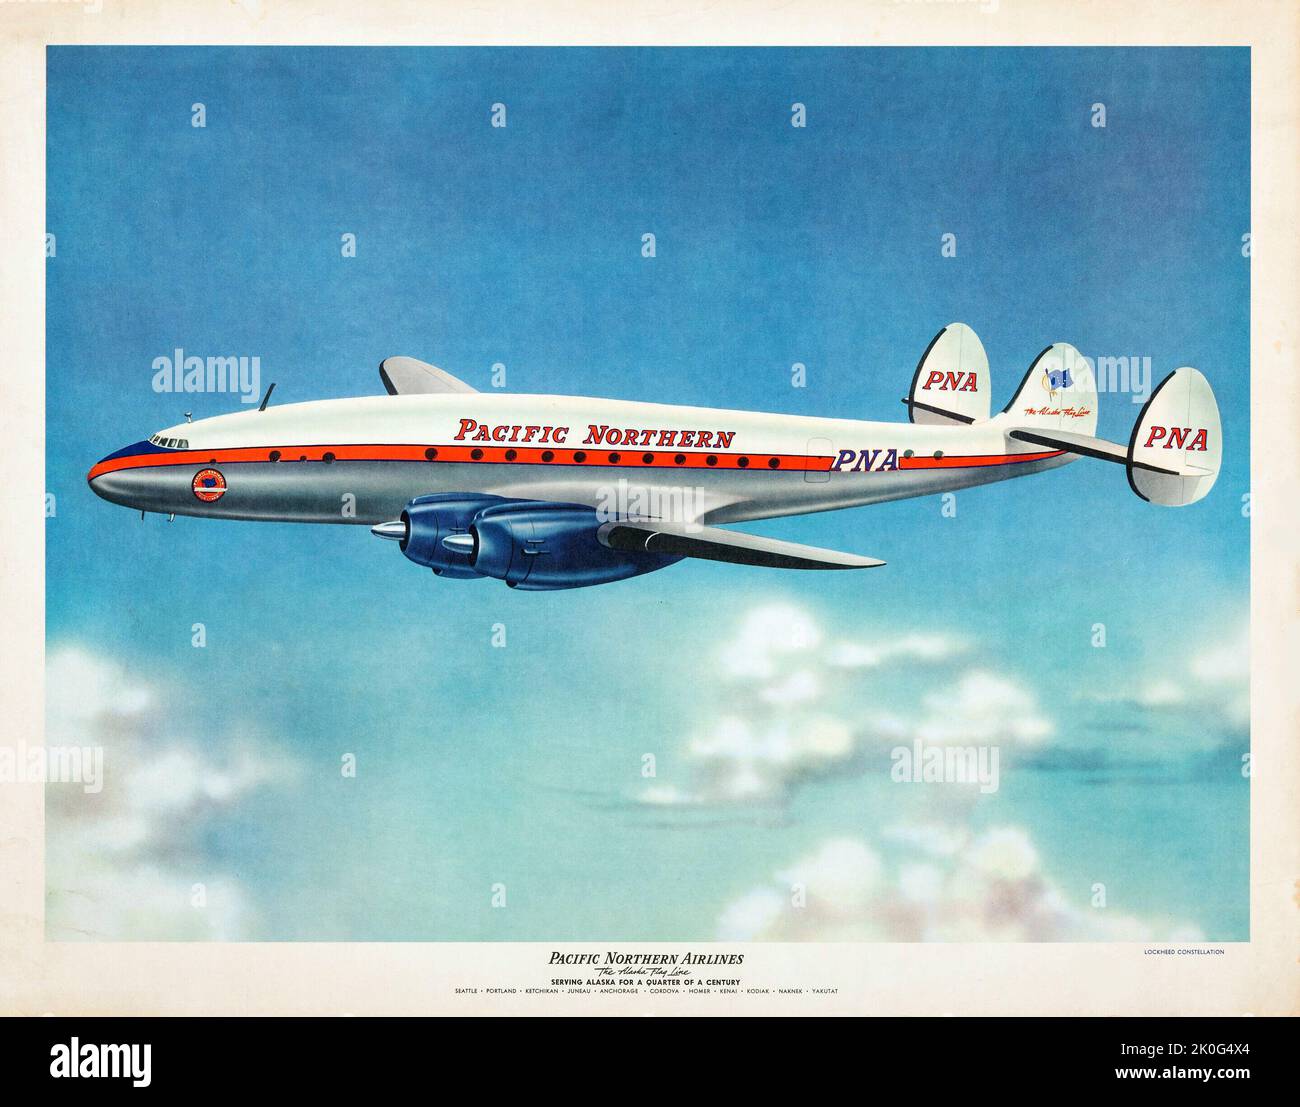 Affiche de la compagnie aérienne - Pacific Northern Airlines - The Alaska Flag Line (Pacific Northern Airlines, c 1960s). Poster de voyage. Avion de ligne. Banque D'Images